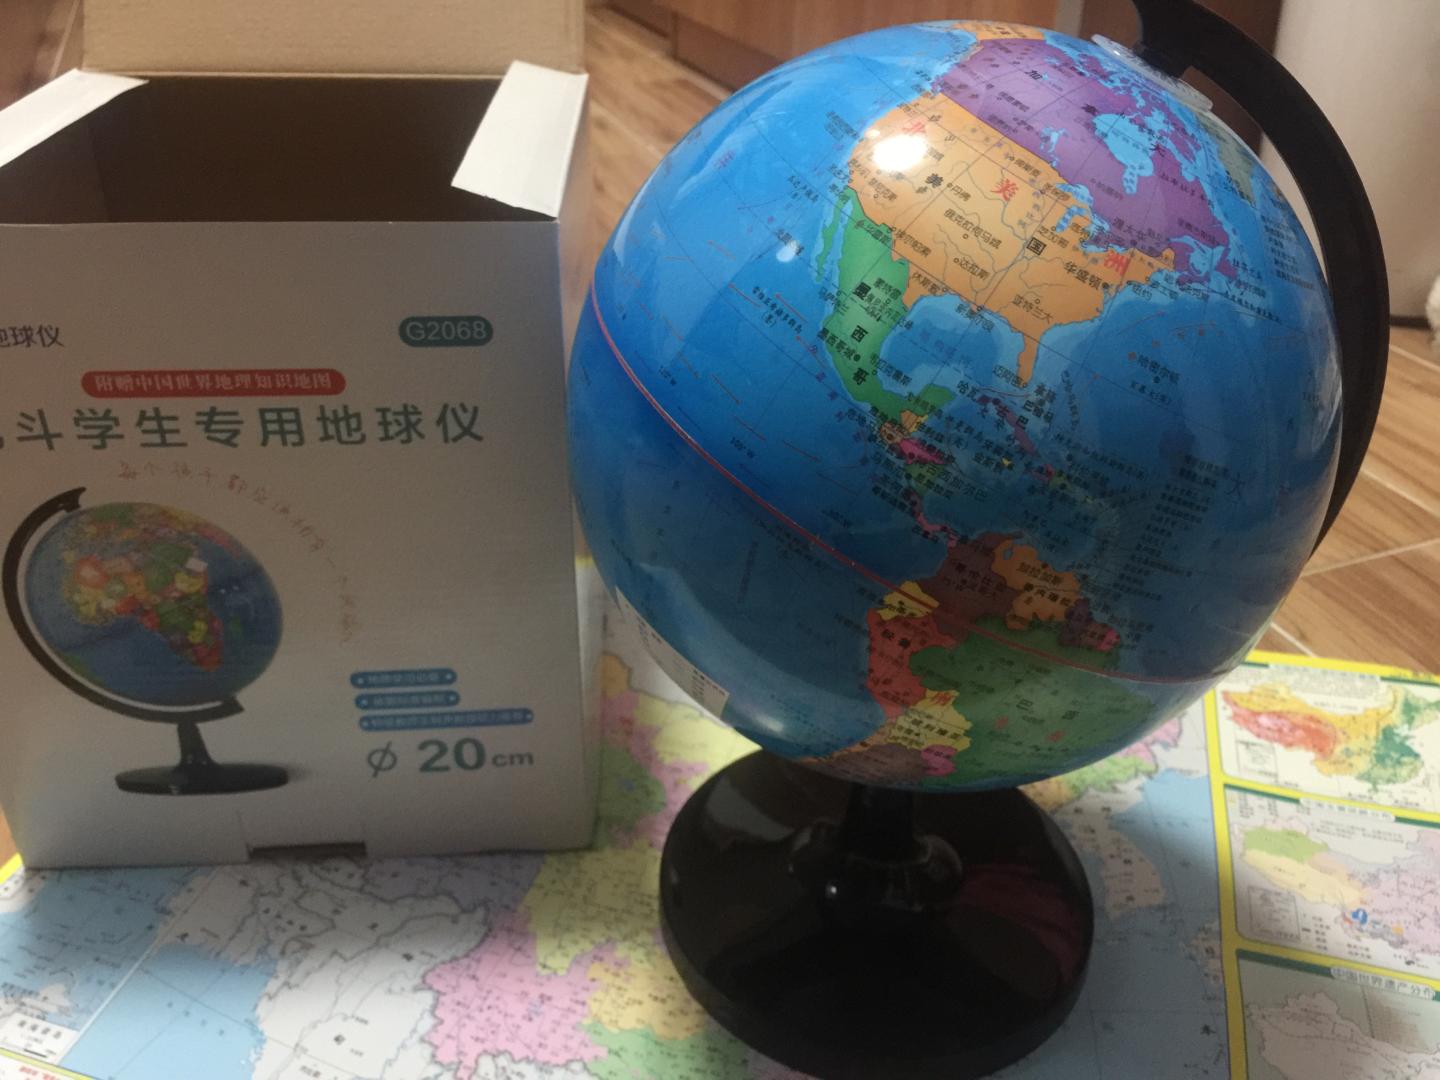 地球仪挺好的，以前没买过也不太会选，发现网上地球仪各种各样价格差好多。但是我收到货后发现自己选的很不错，包装完好，球上面的字印刷清晰，颜色鲜艳，大小合适。地理老师推荐购买的，认识世界足够了。送了一张地图，一面中国一面世界，非常满意。